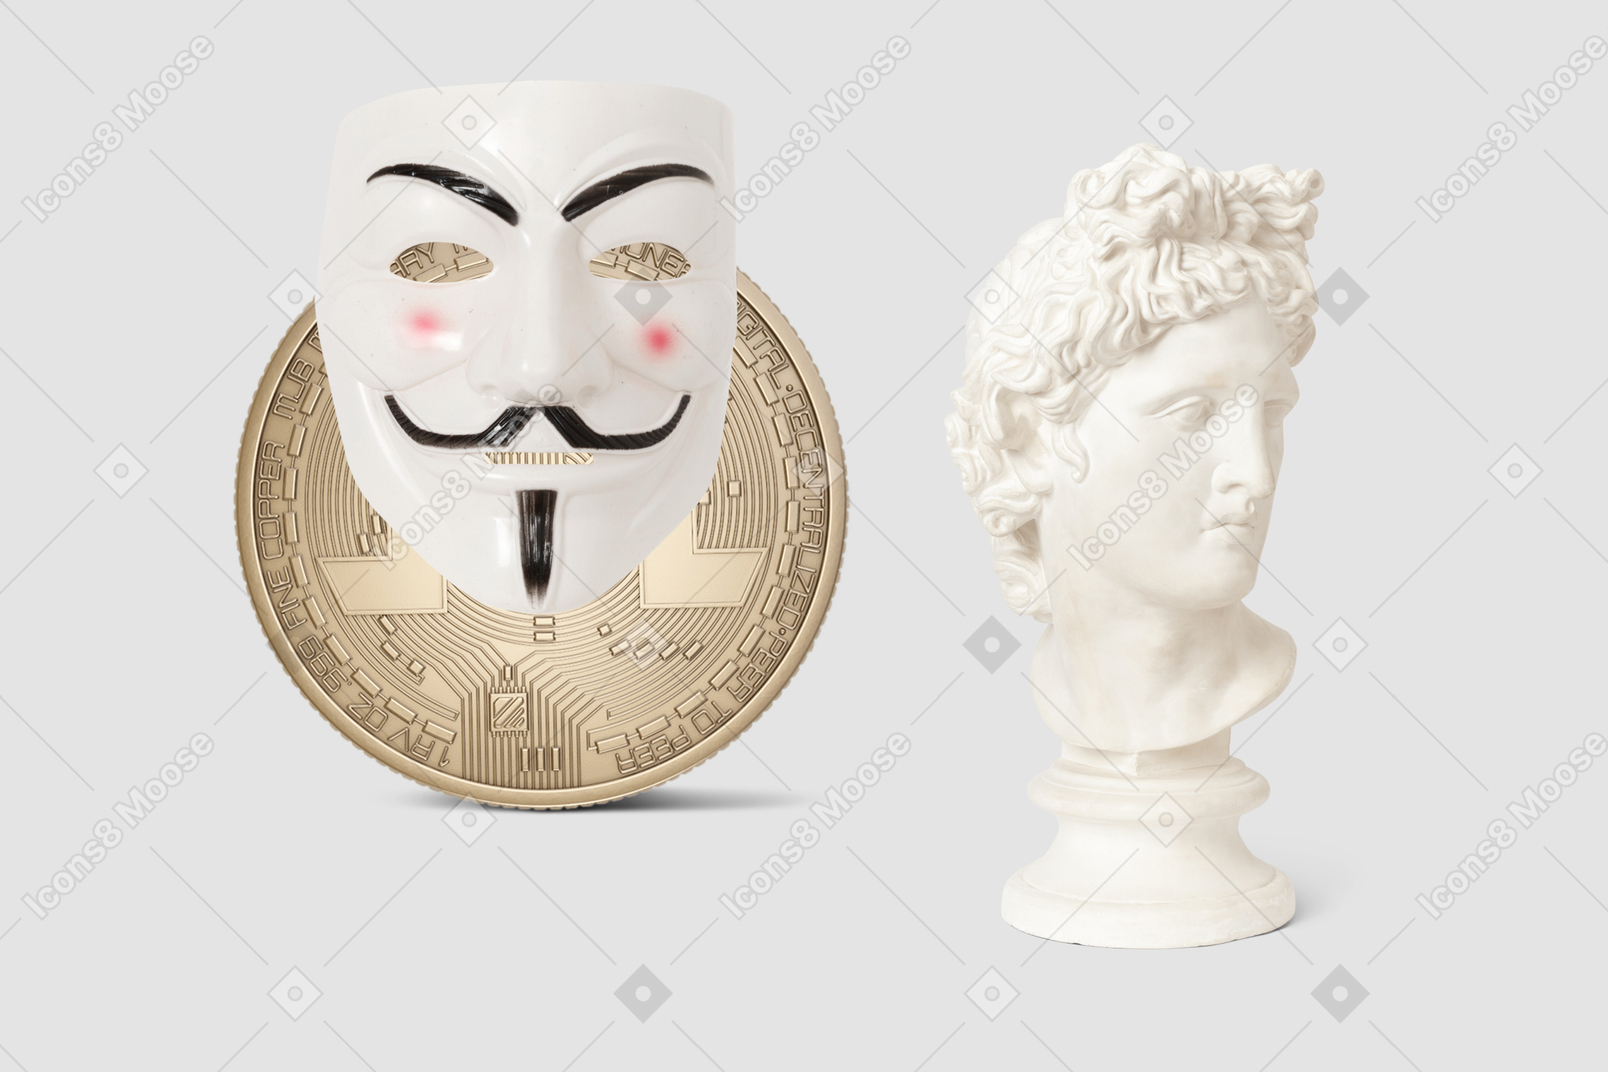 Busto di statua, maschera anonima e bitcoin